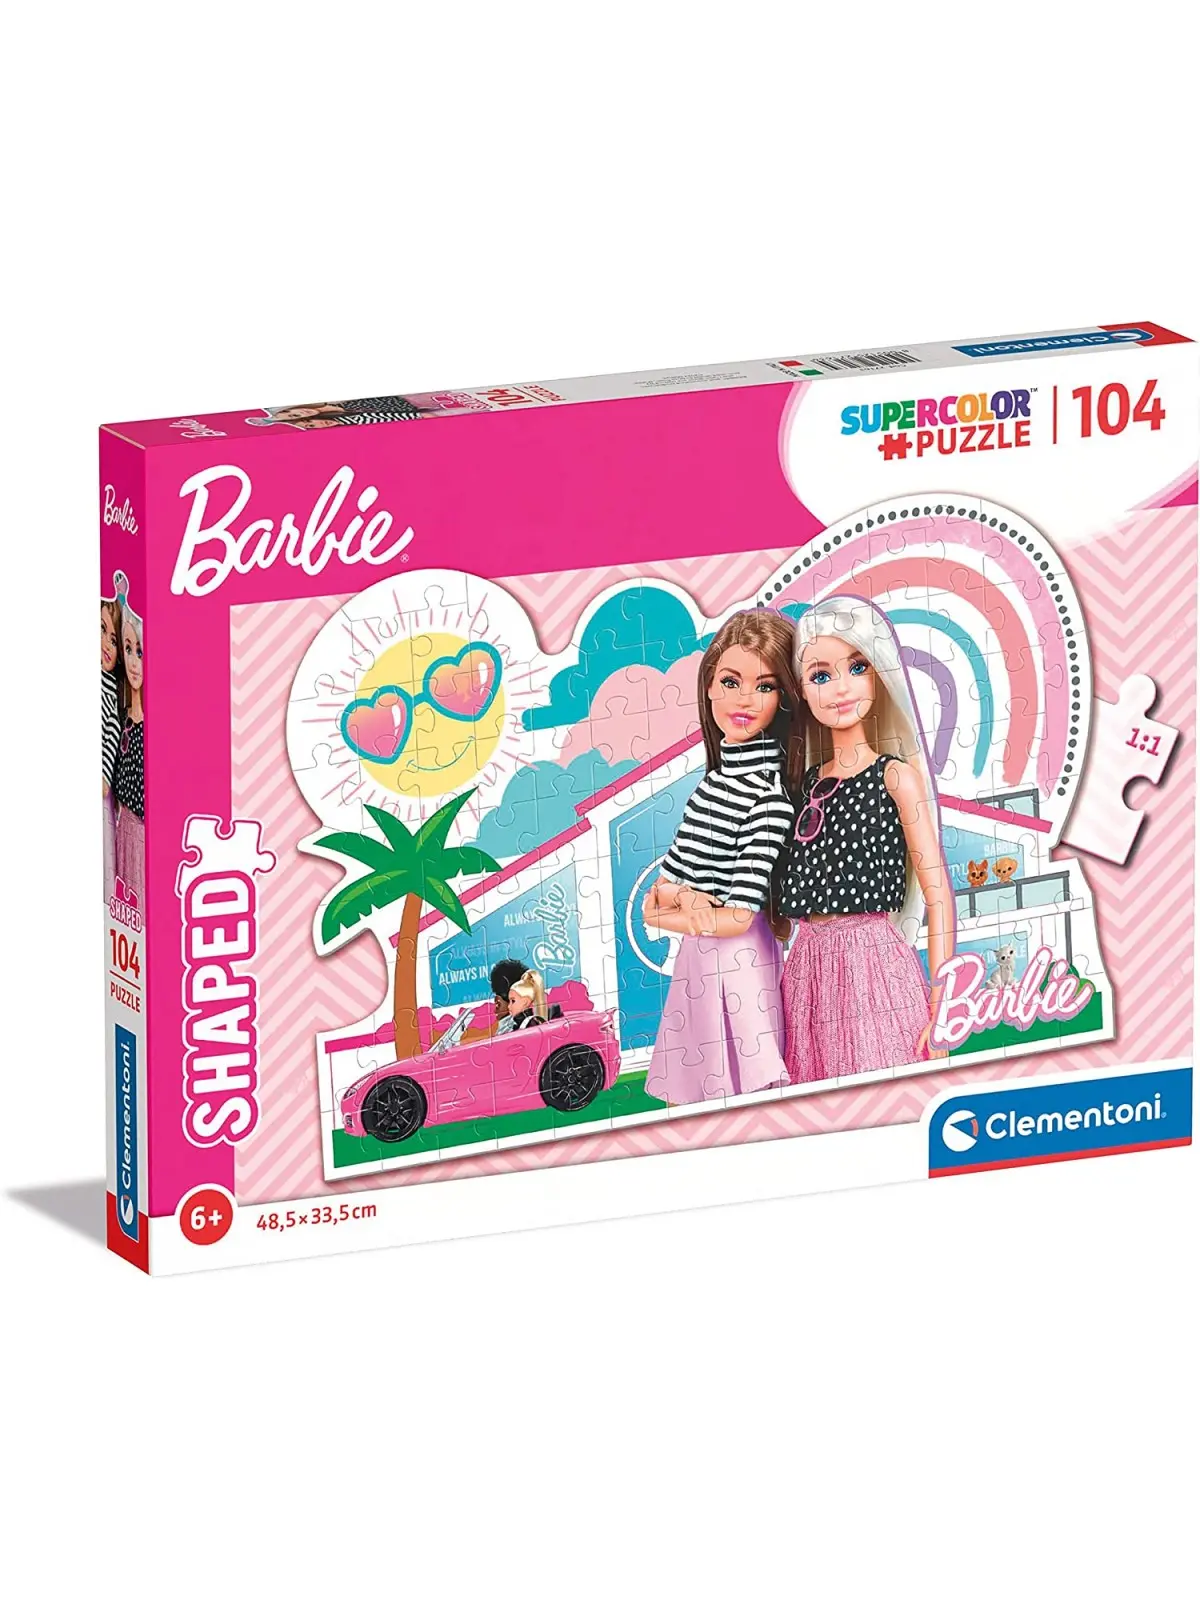 Super Color Puzzle Shaped Barbie 104 pcs